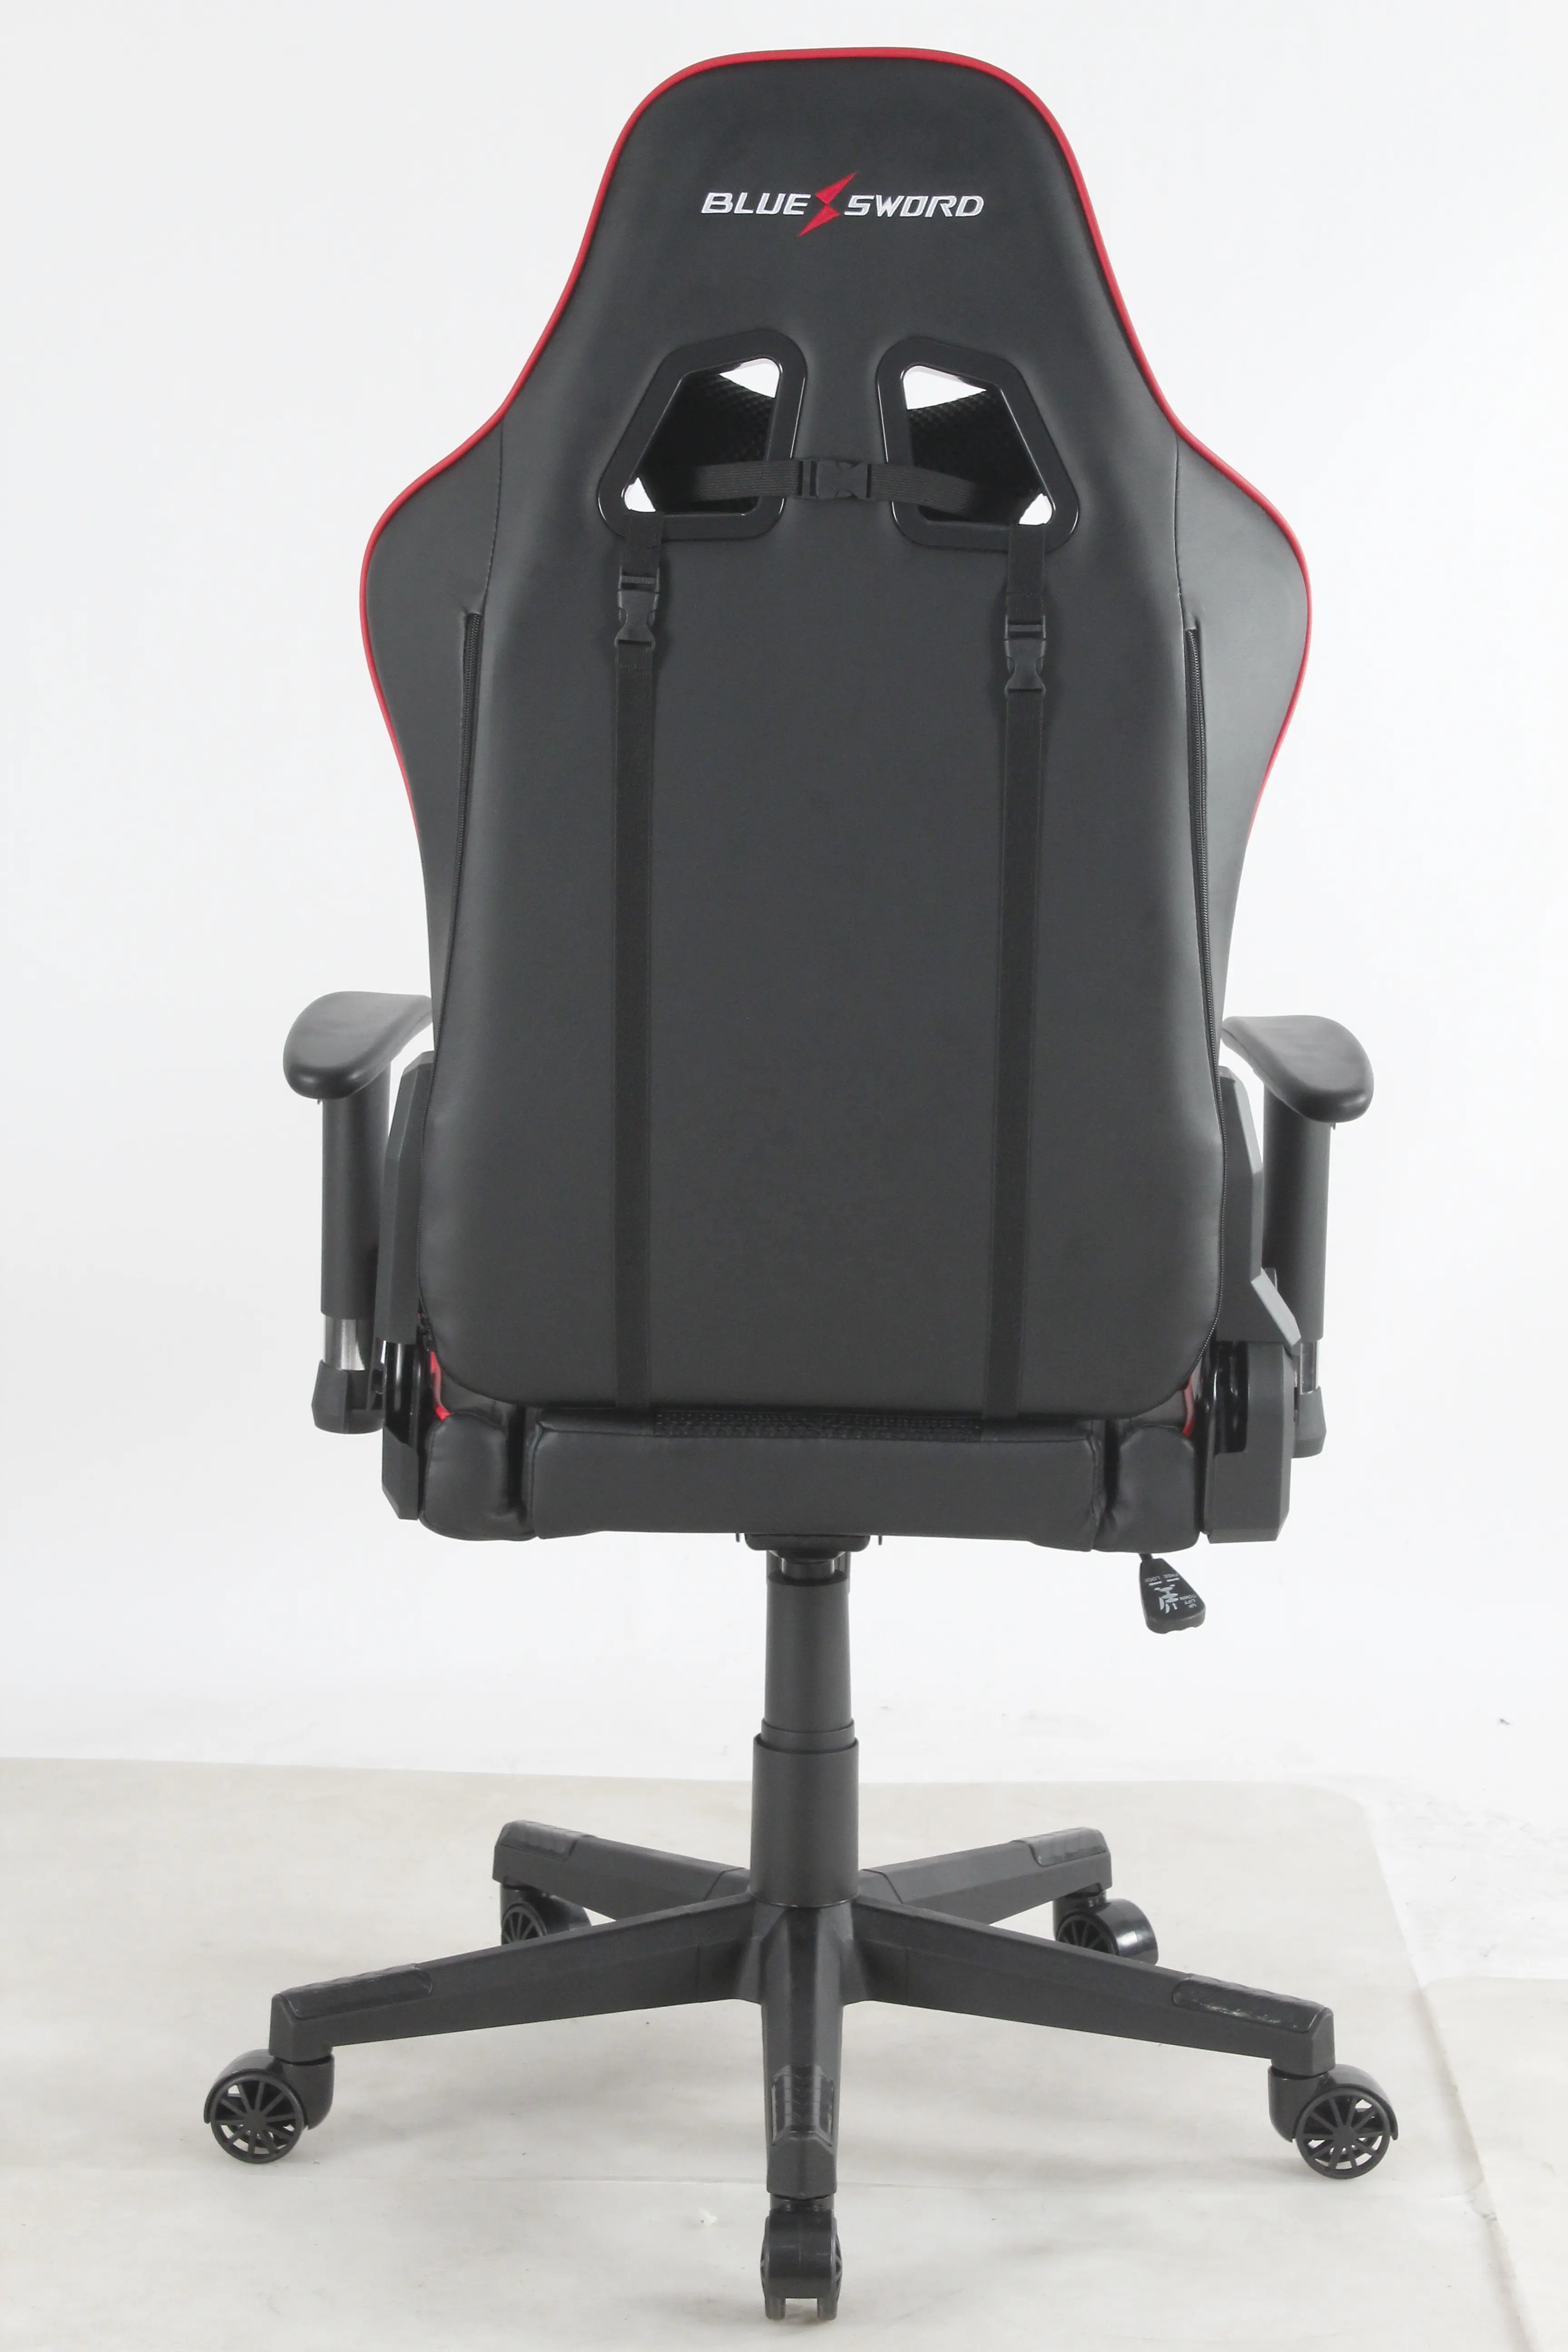 Игровое кресло Judor с высокой спинкой по низкой цене